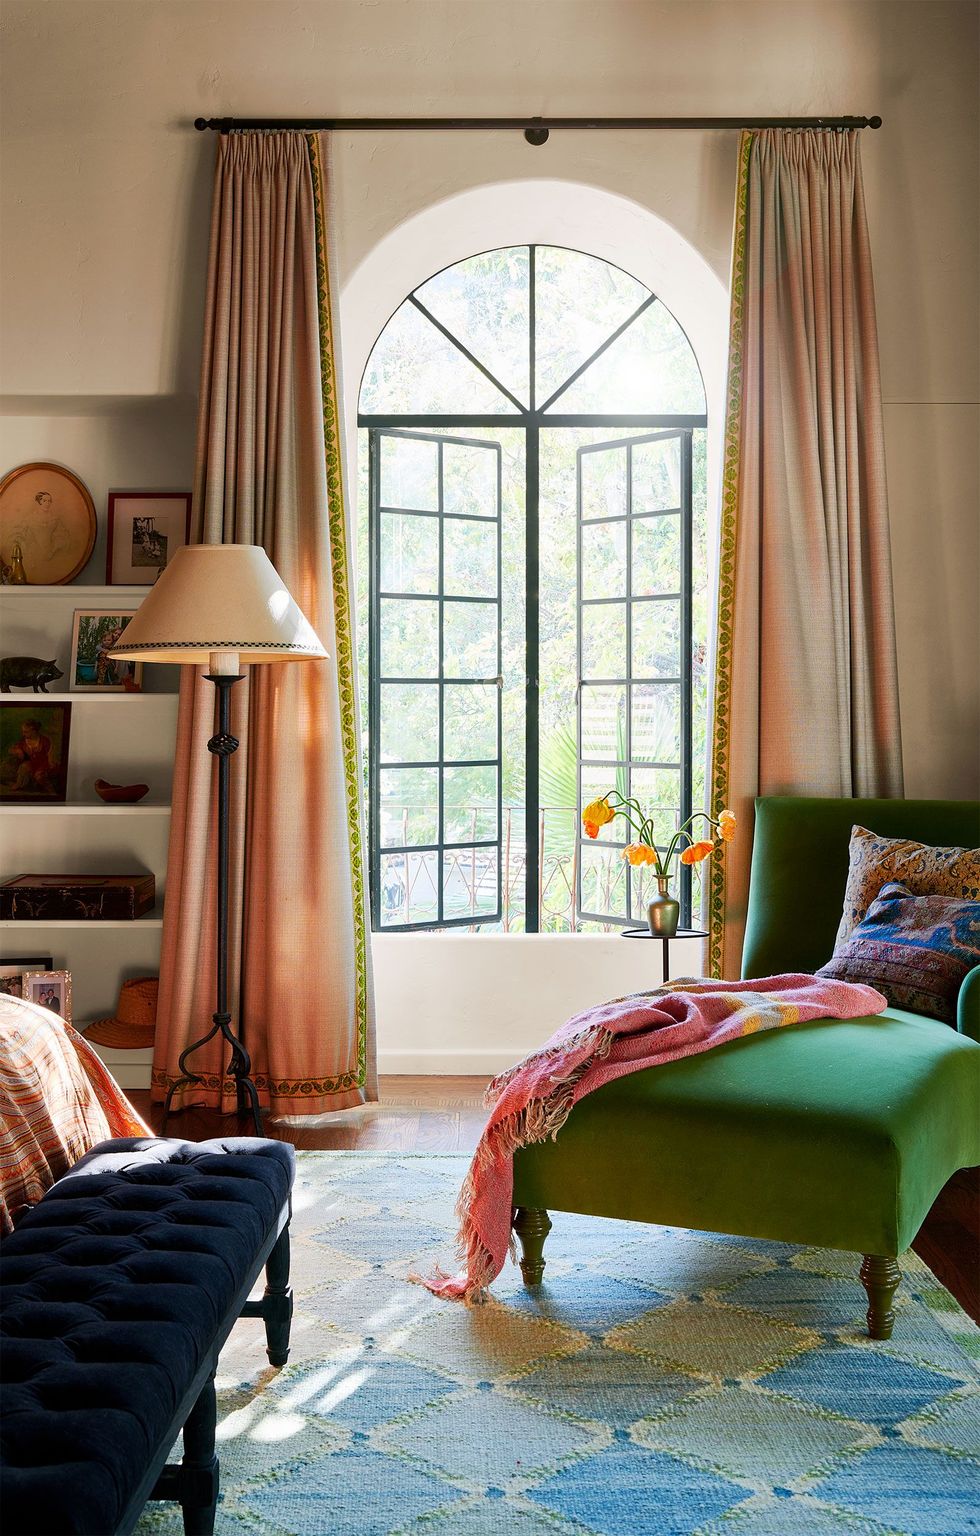 Nếu là người yêu thích màu sắc, bạn có thể tham khảo ý tưởng trang trí nội thất của phòng khách kết hợp khu vực thư giãn này. Ghế màu xanh lam đậm, xanh lá cây trẻ trung, kết hợp rèm che màu cam pastel, tương đồng với chụp đèn sàn duyên dáng.